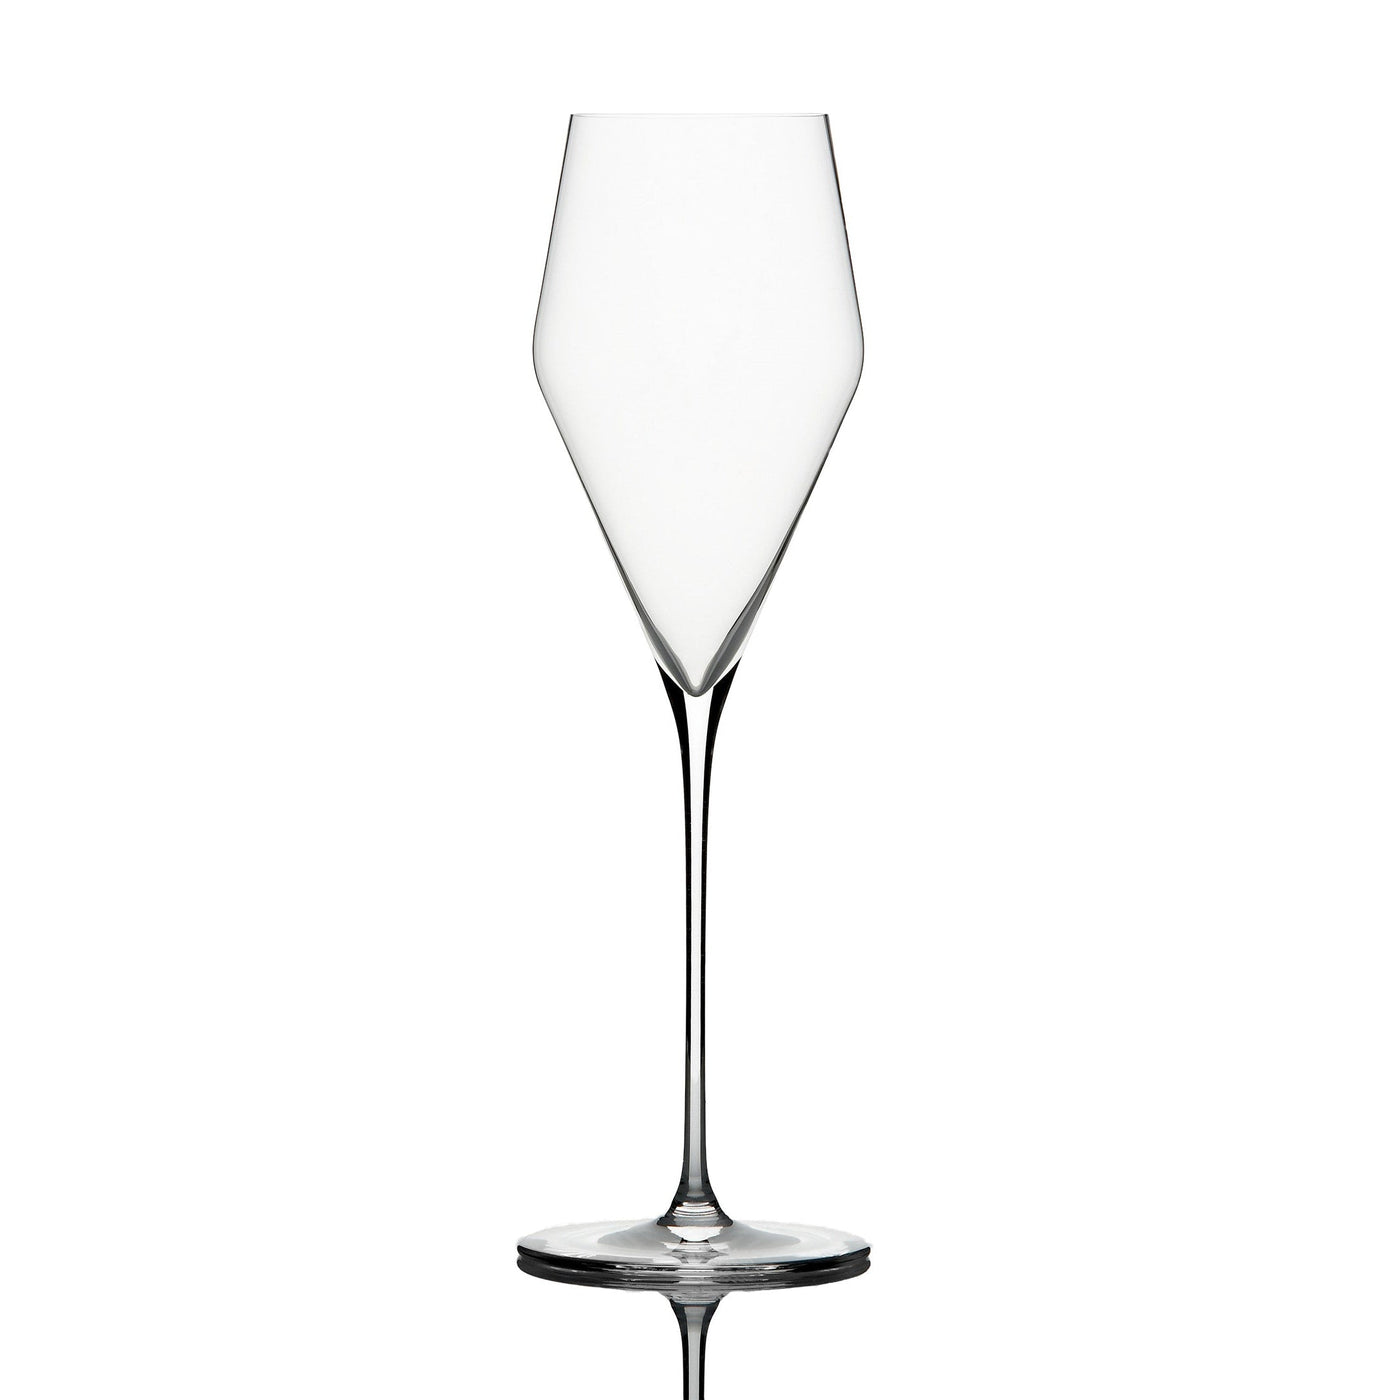 Zalto Denk Art Champagne glass